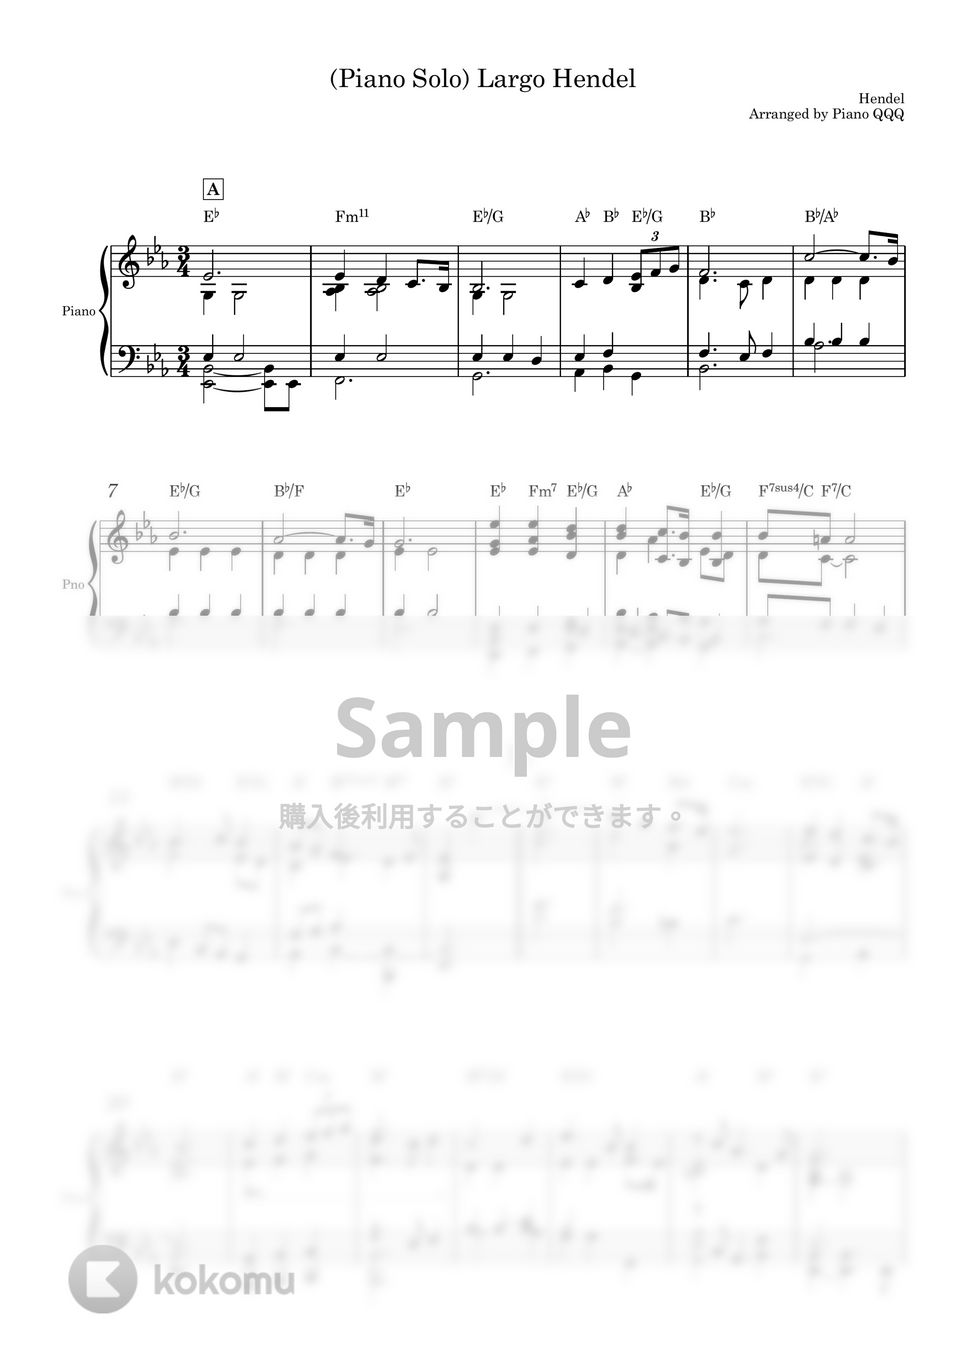 ヘンデル - Largo (ピアノソロ) by Piano QQQ